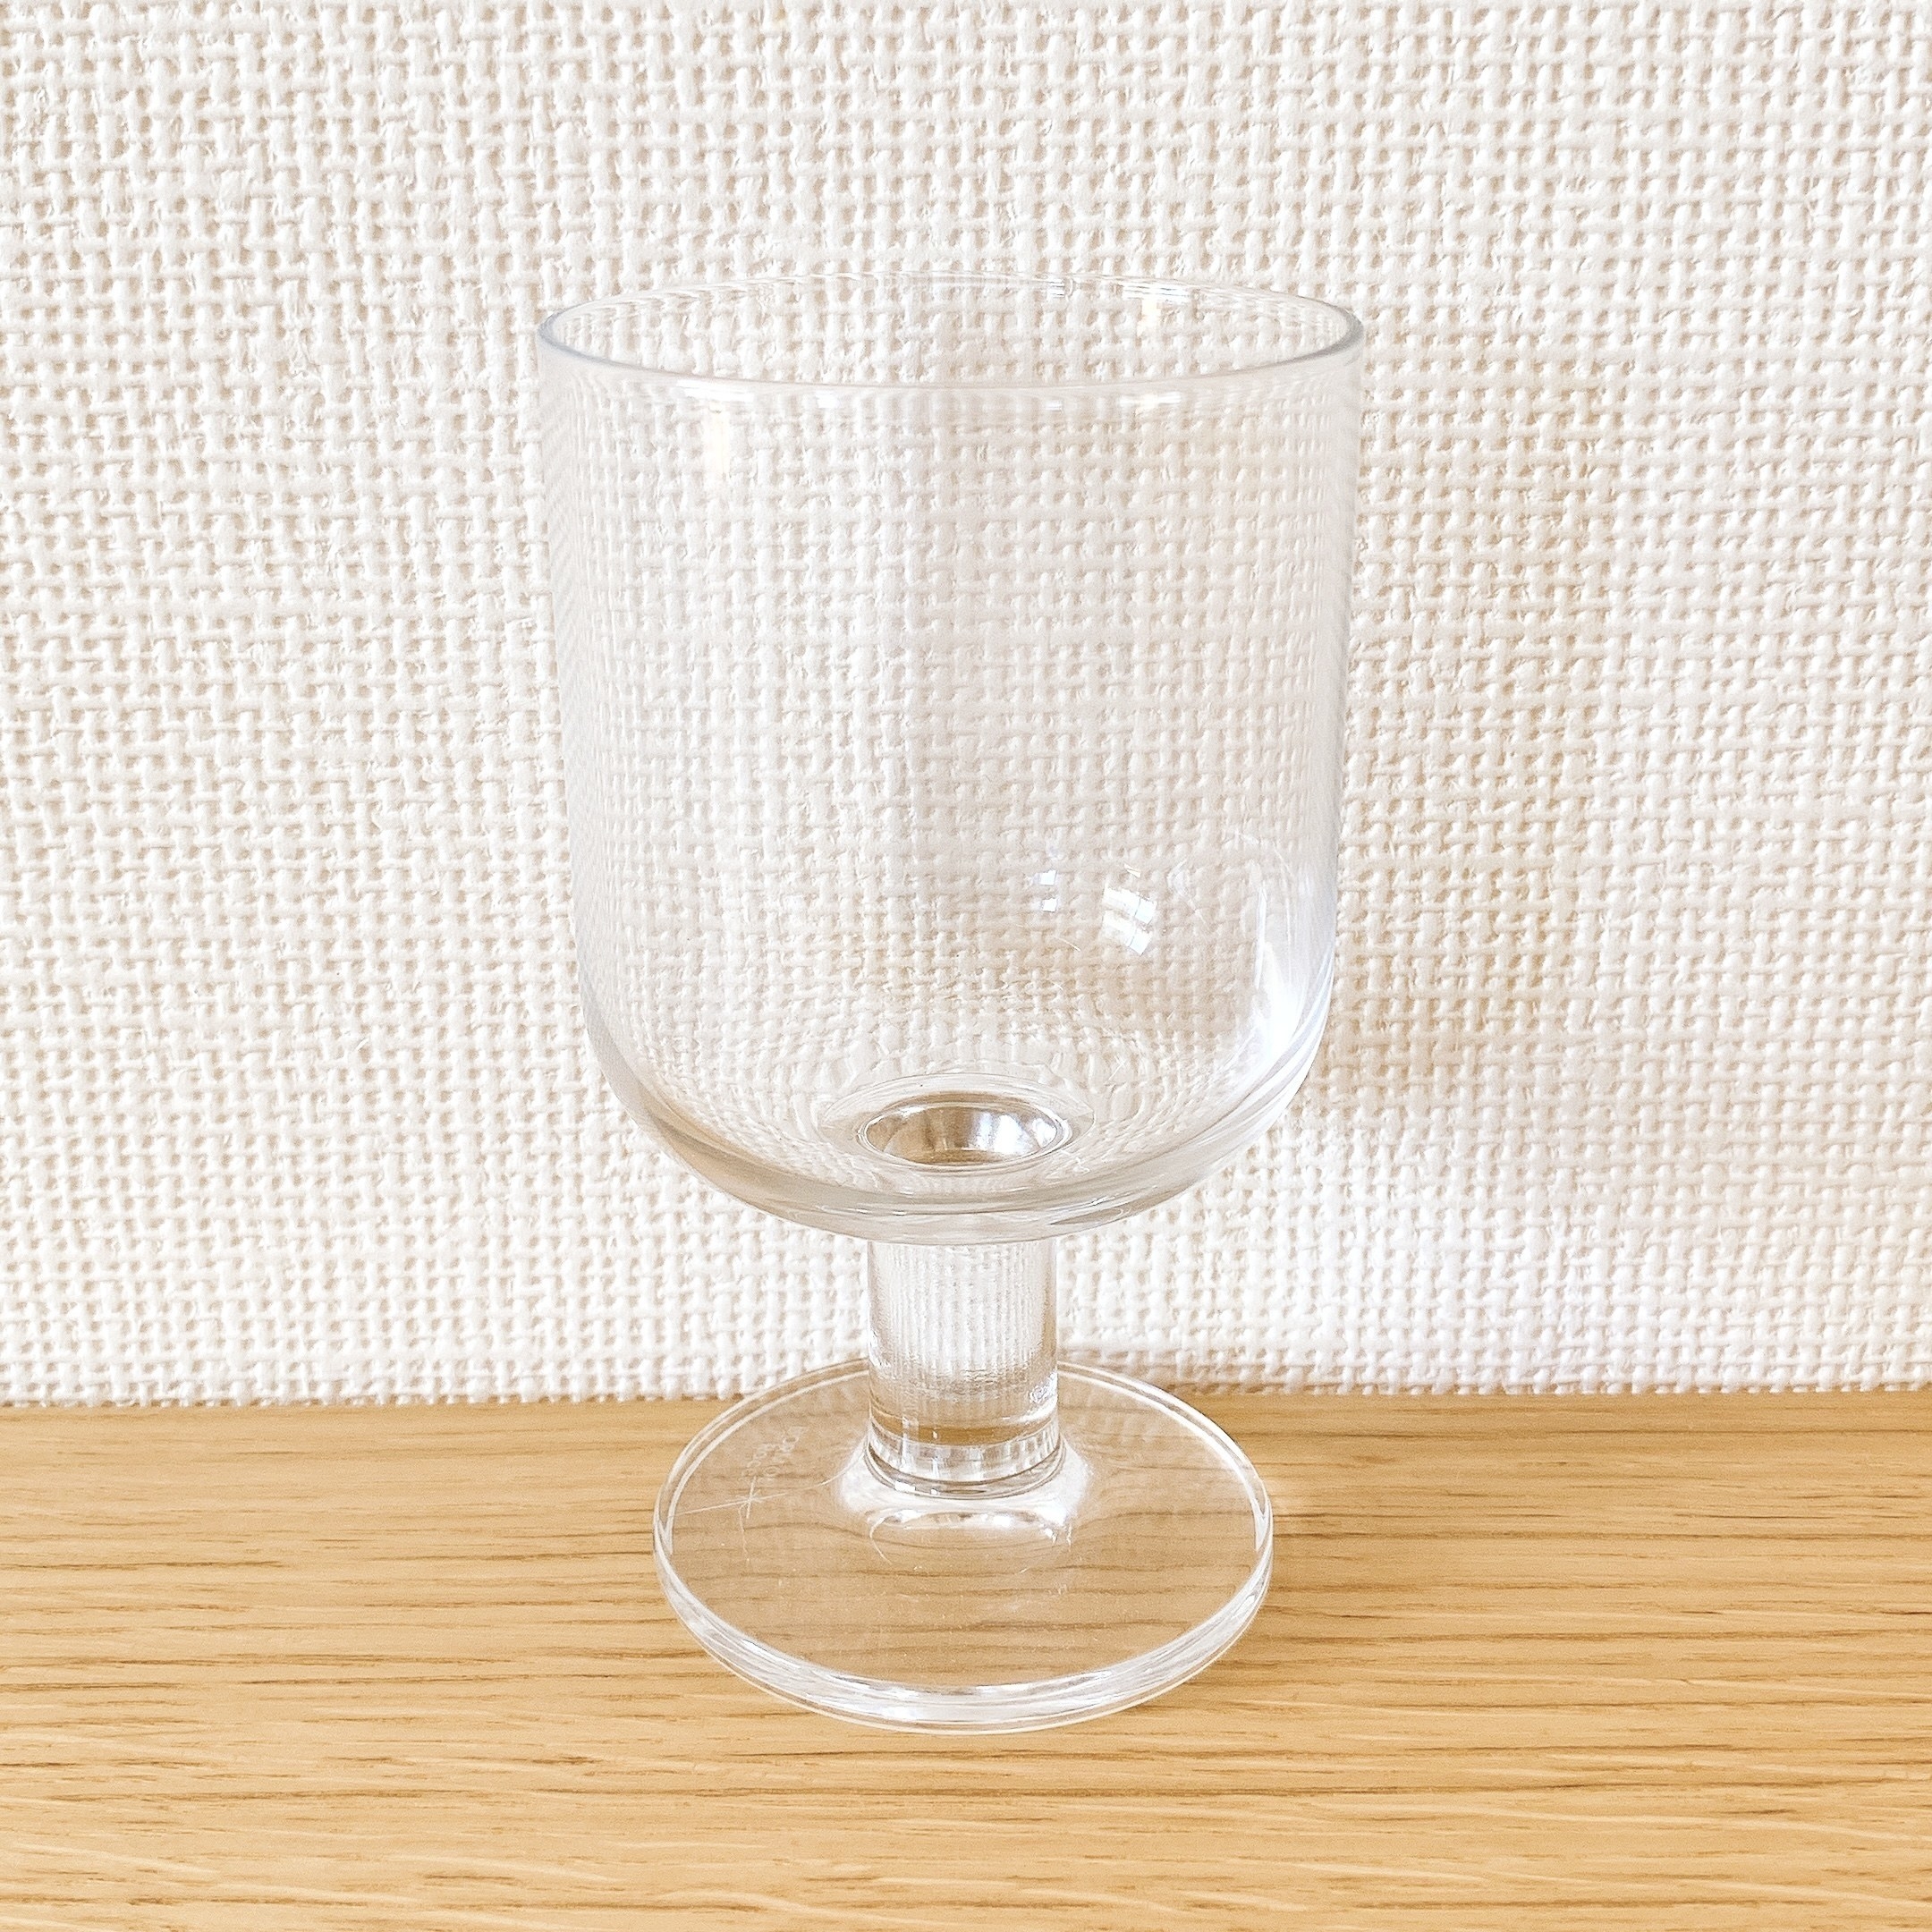 無印良品のオススメのグラス「強化ガラス ステムグラス L」